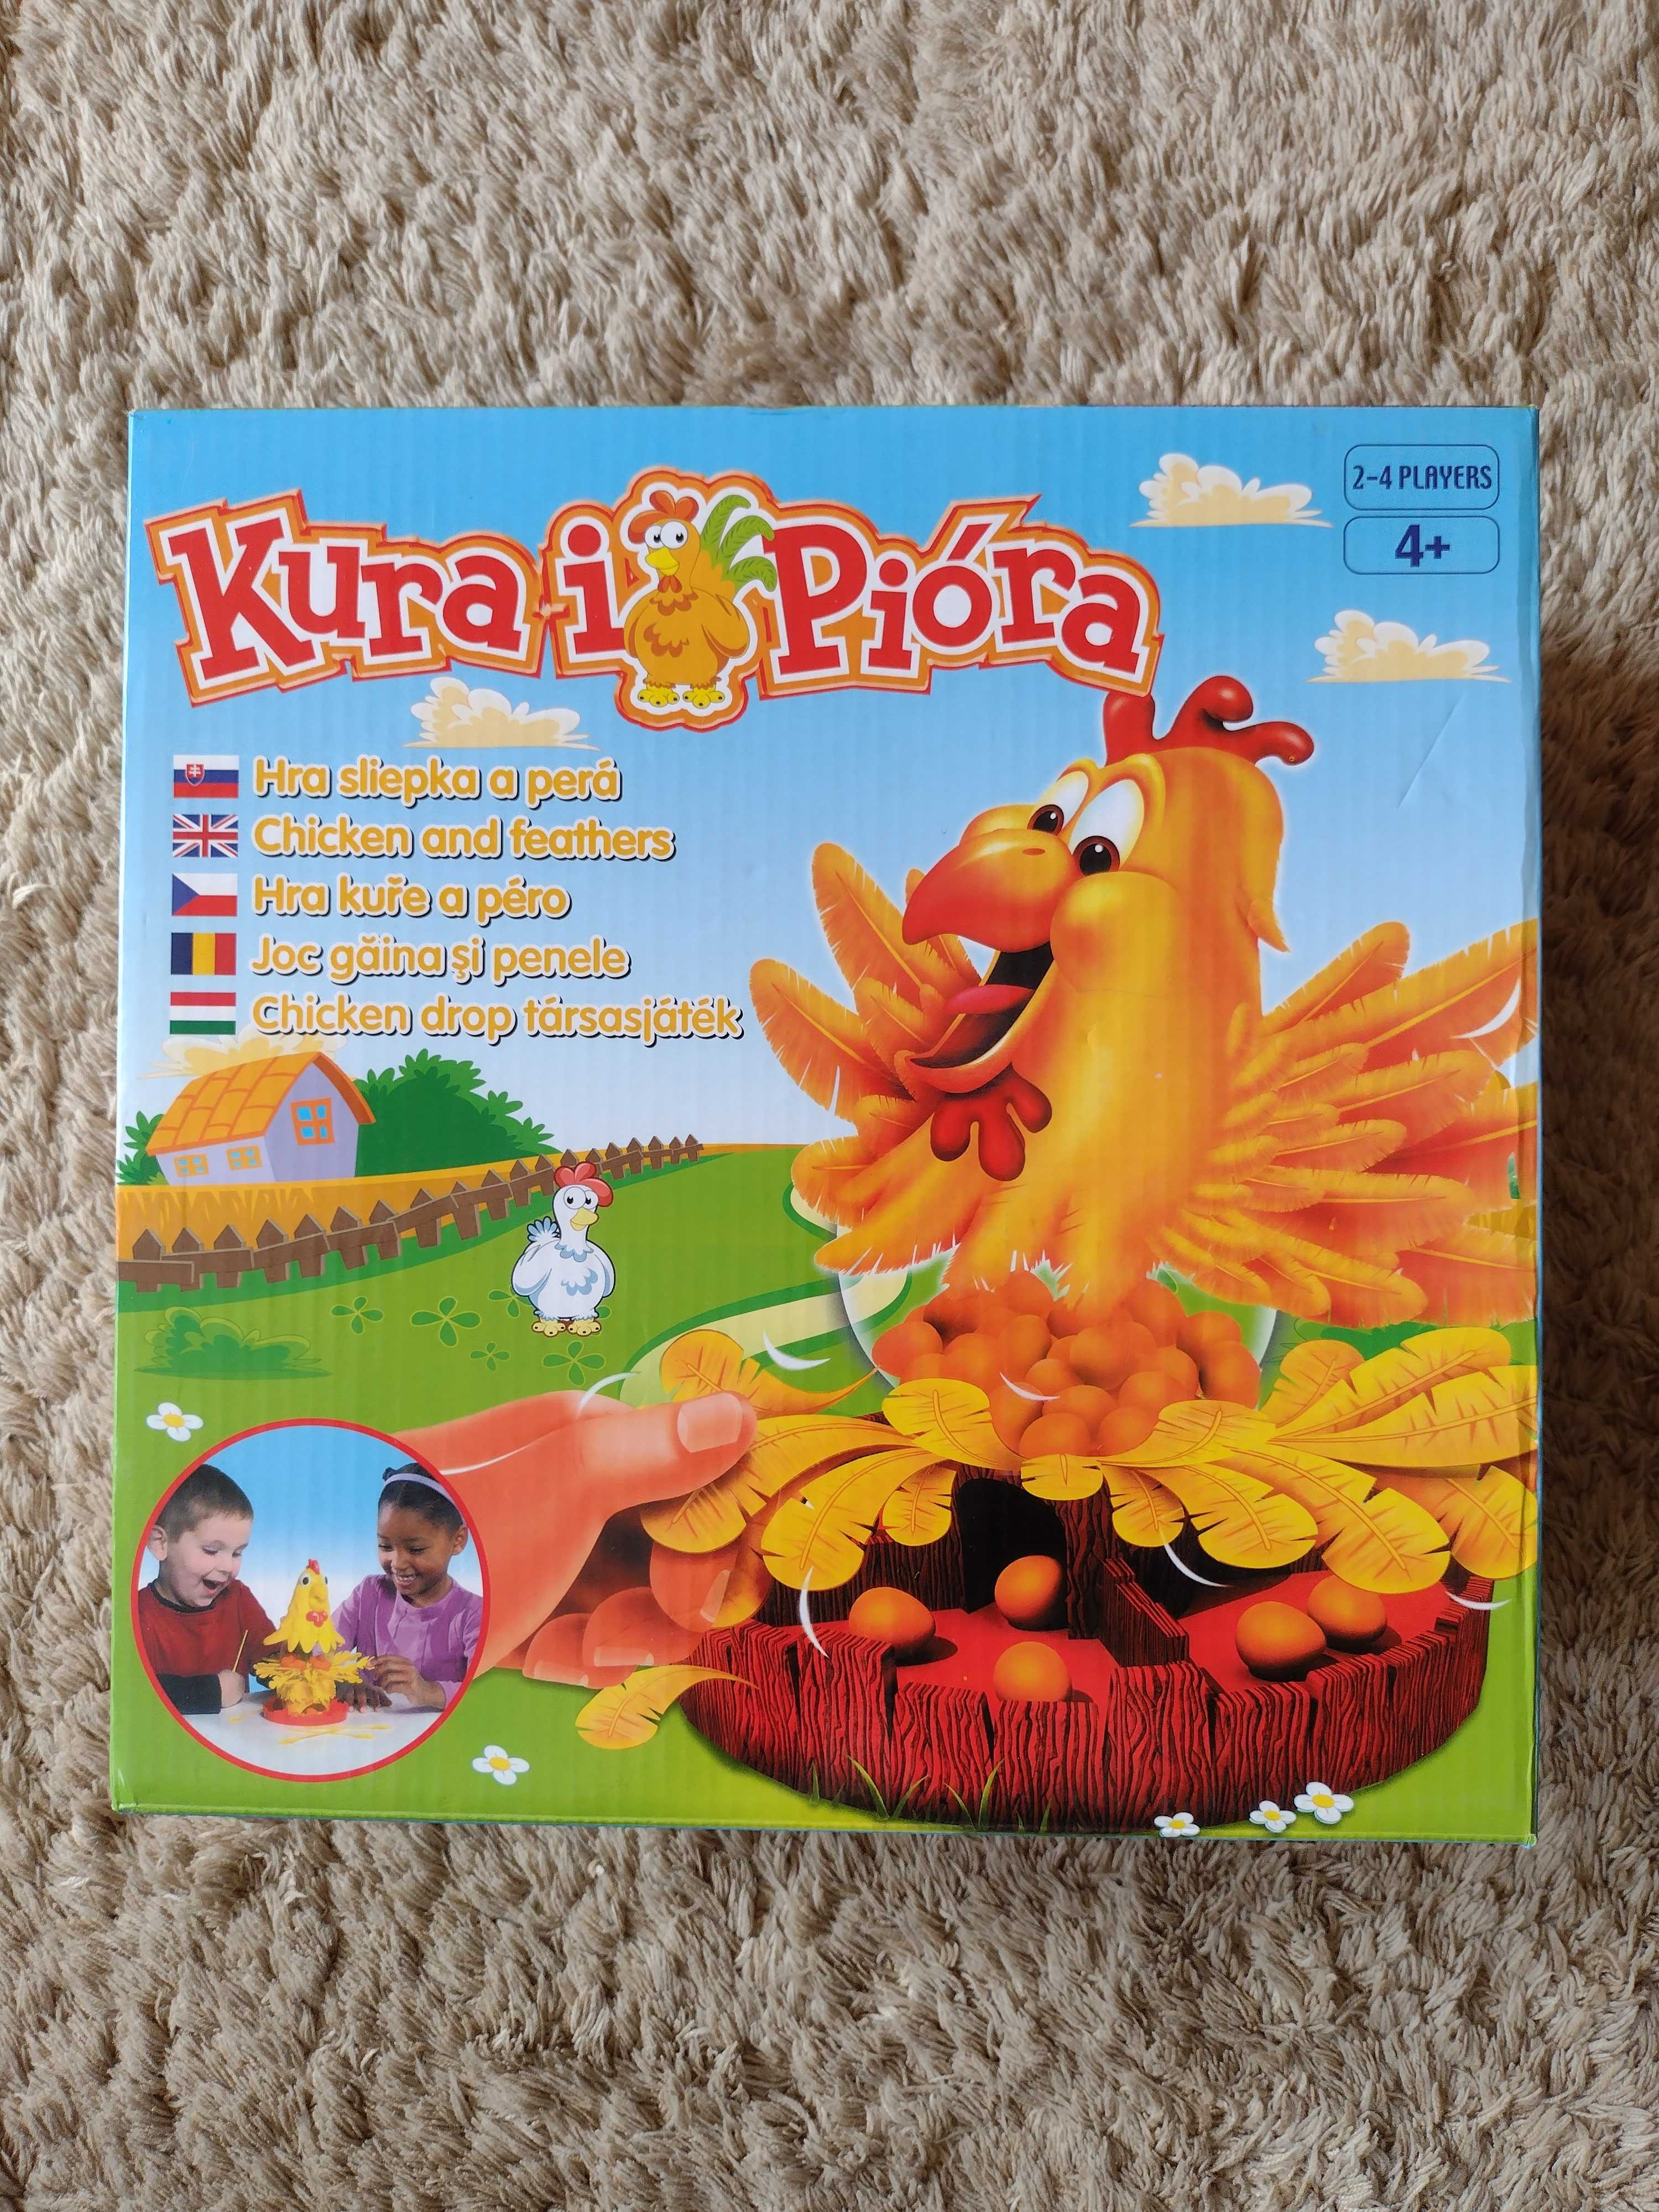 Kura i Pióra gra dla 2 do 4 graczy.